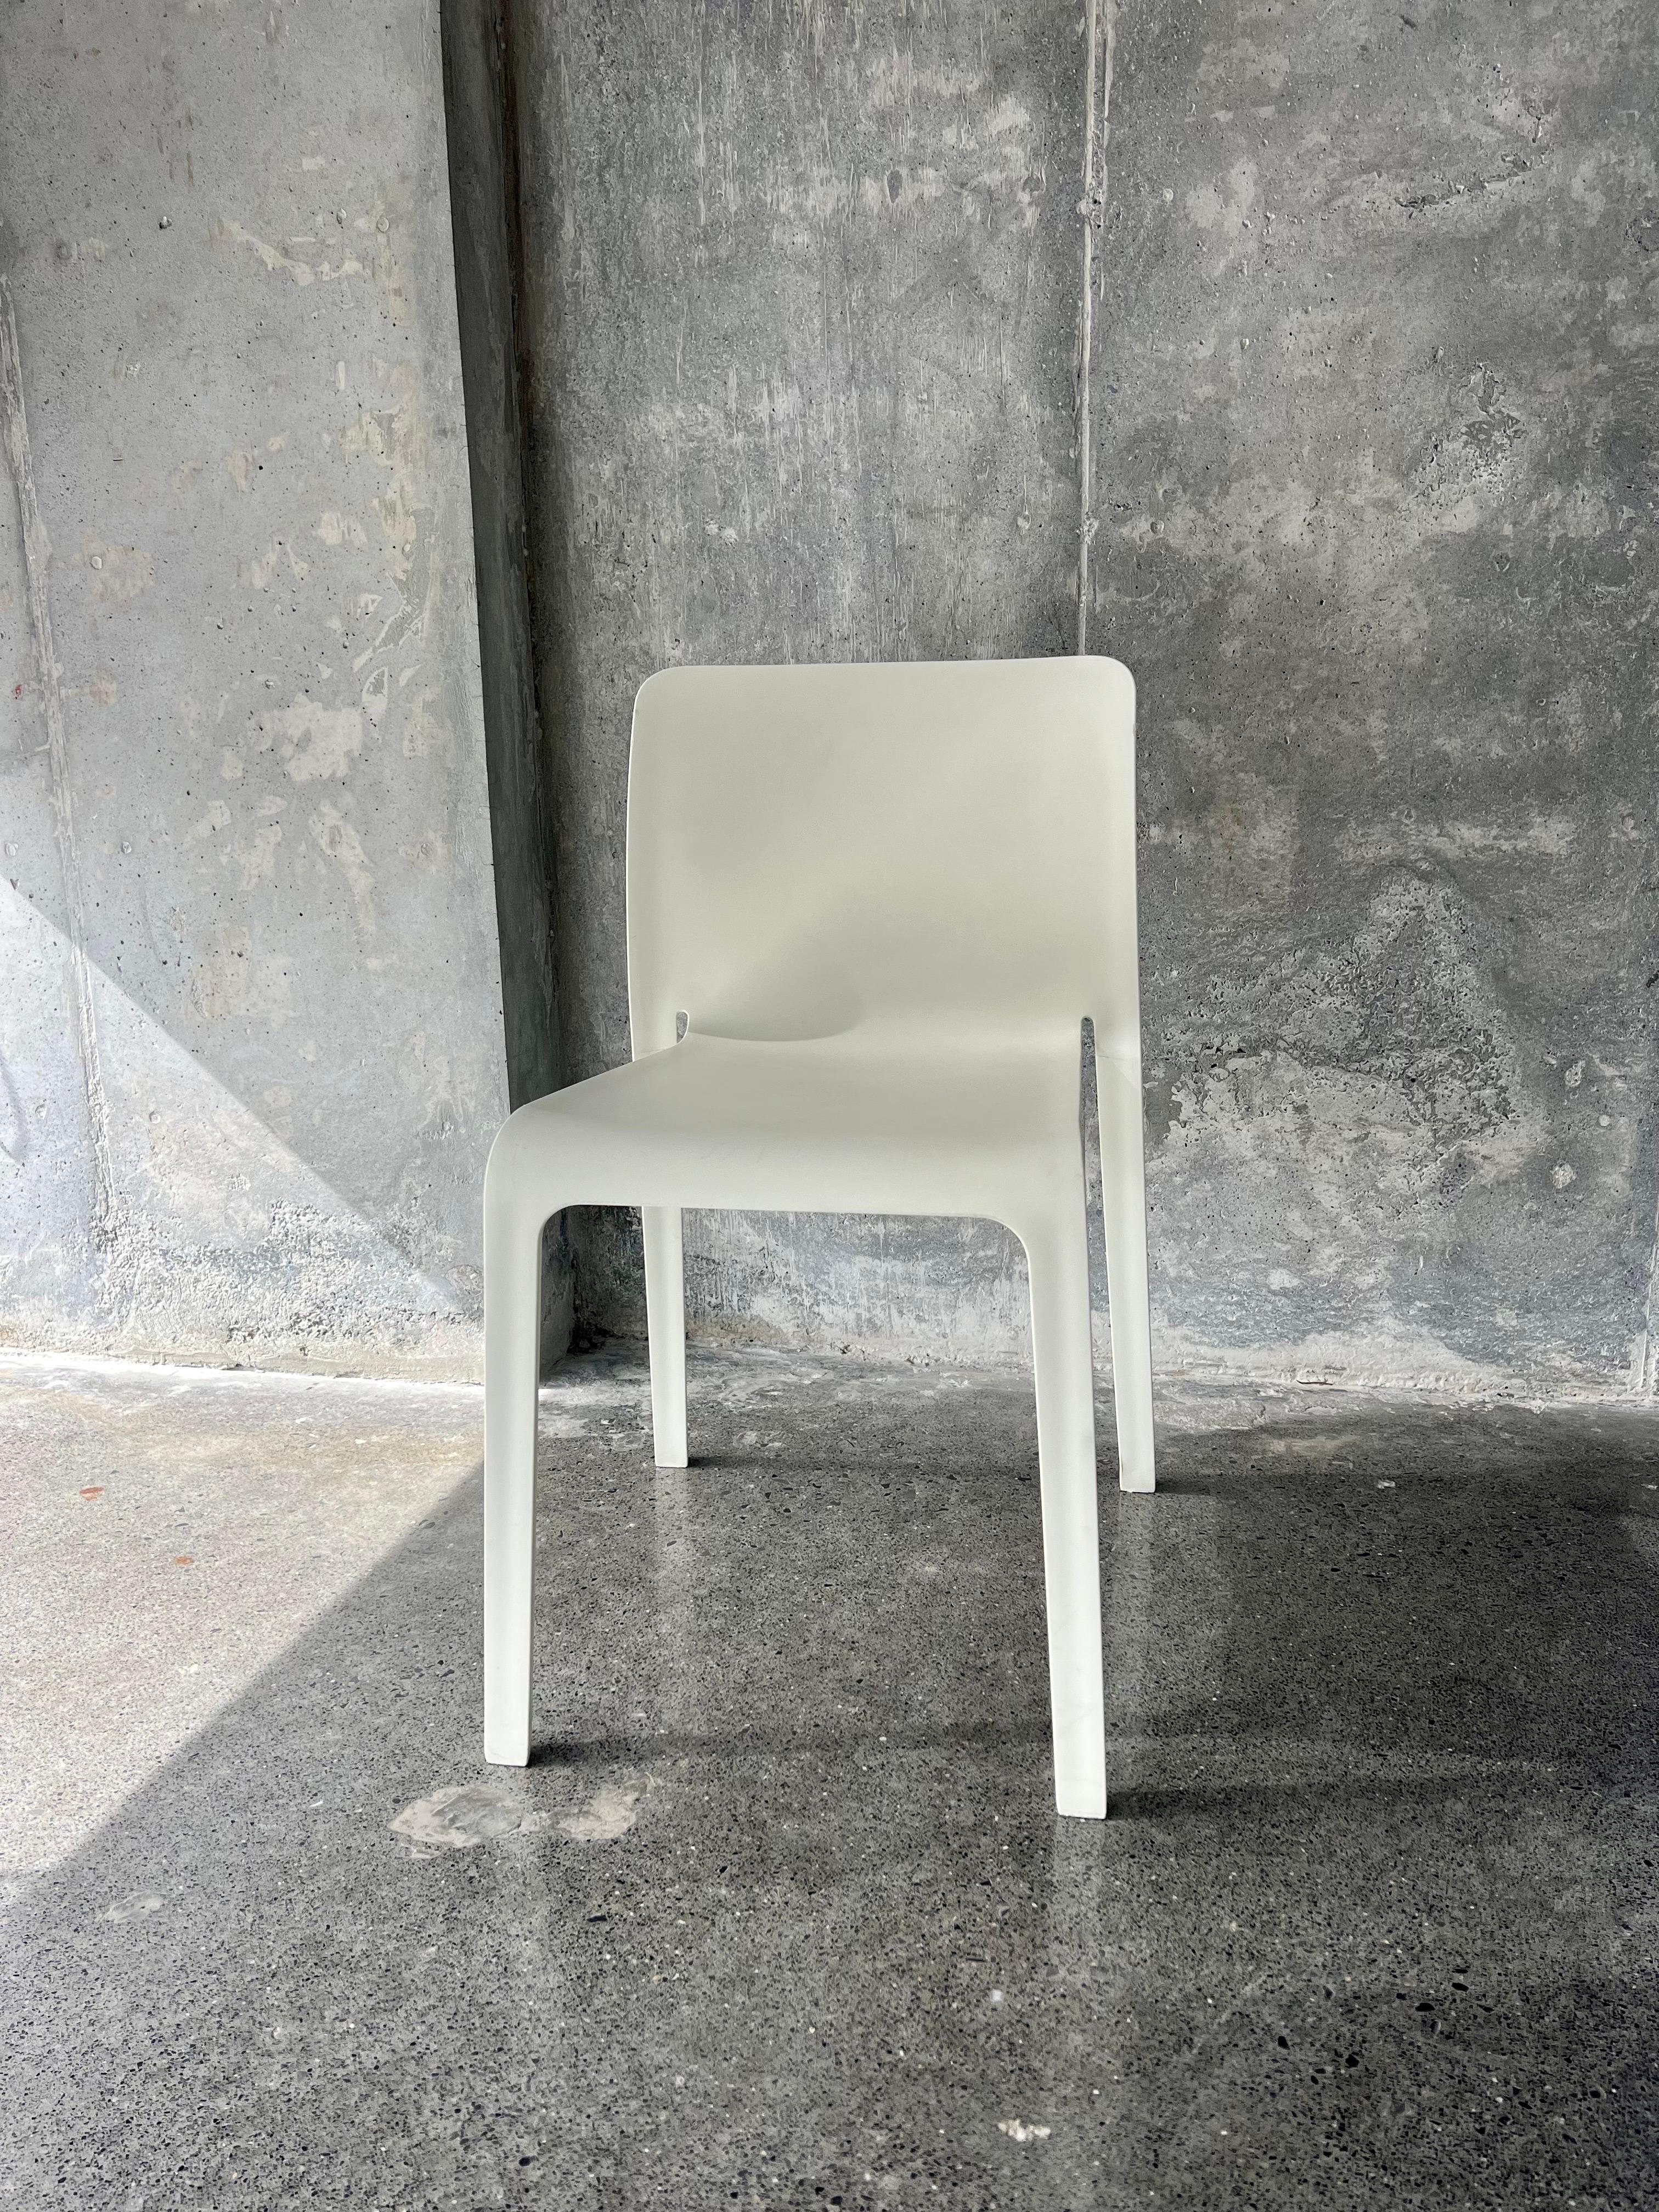 Für Ihre Betrachtung, Satz von 7 Erstes Modell Stühle von dem italienischen Designer Stefano Giovannoni für Magis, diese Stühle gehörten zu den Vermögenswerten der internationalen LEGO aus dem Betriebswerk in Mexiko, sie sind aus dem Jahr 2018 und